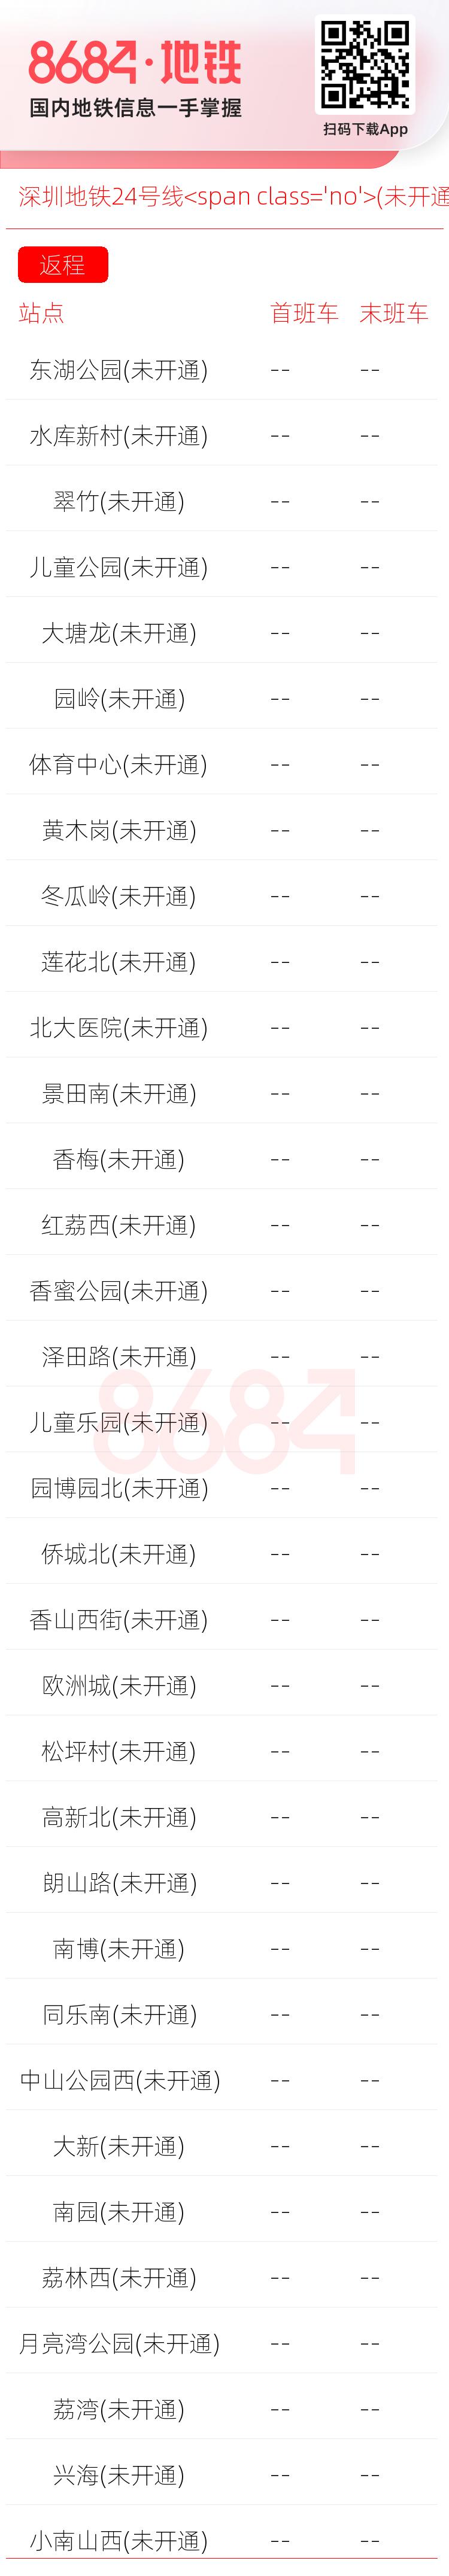 深圳地铁24号线<span class='no'>(未开通)</span>运营时间表